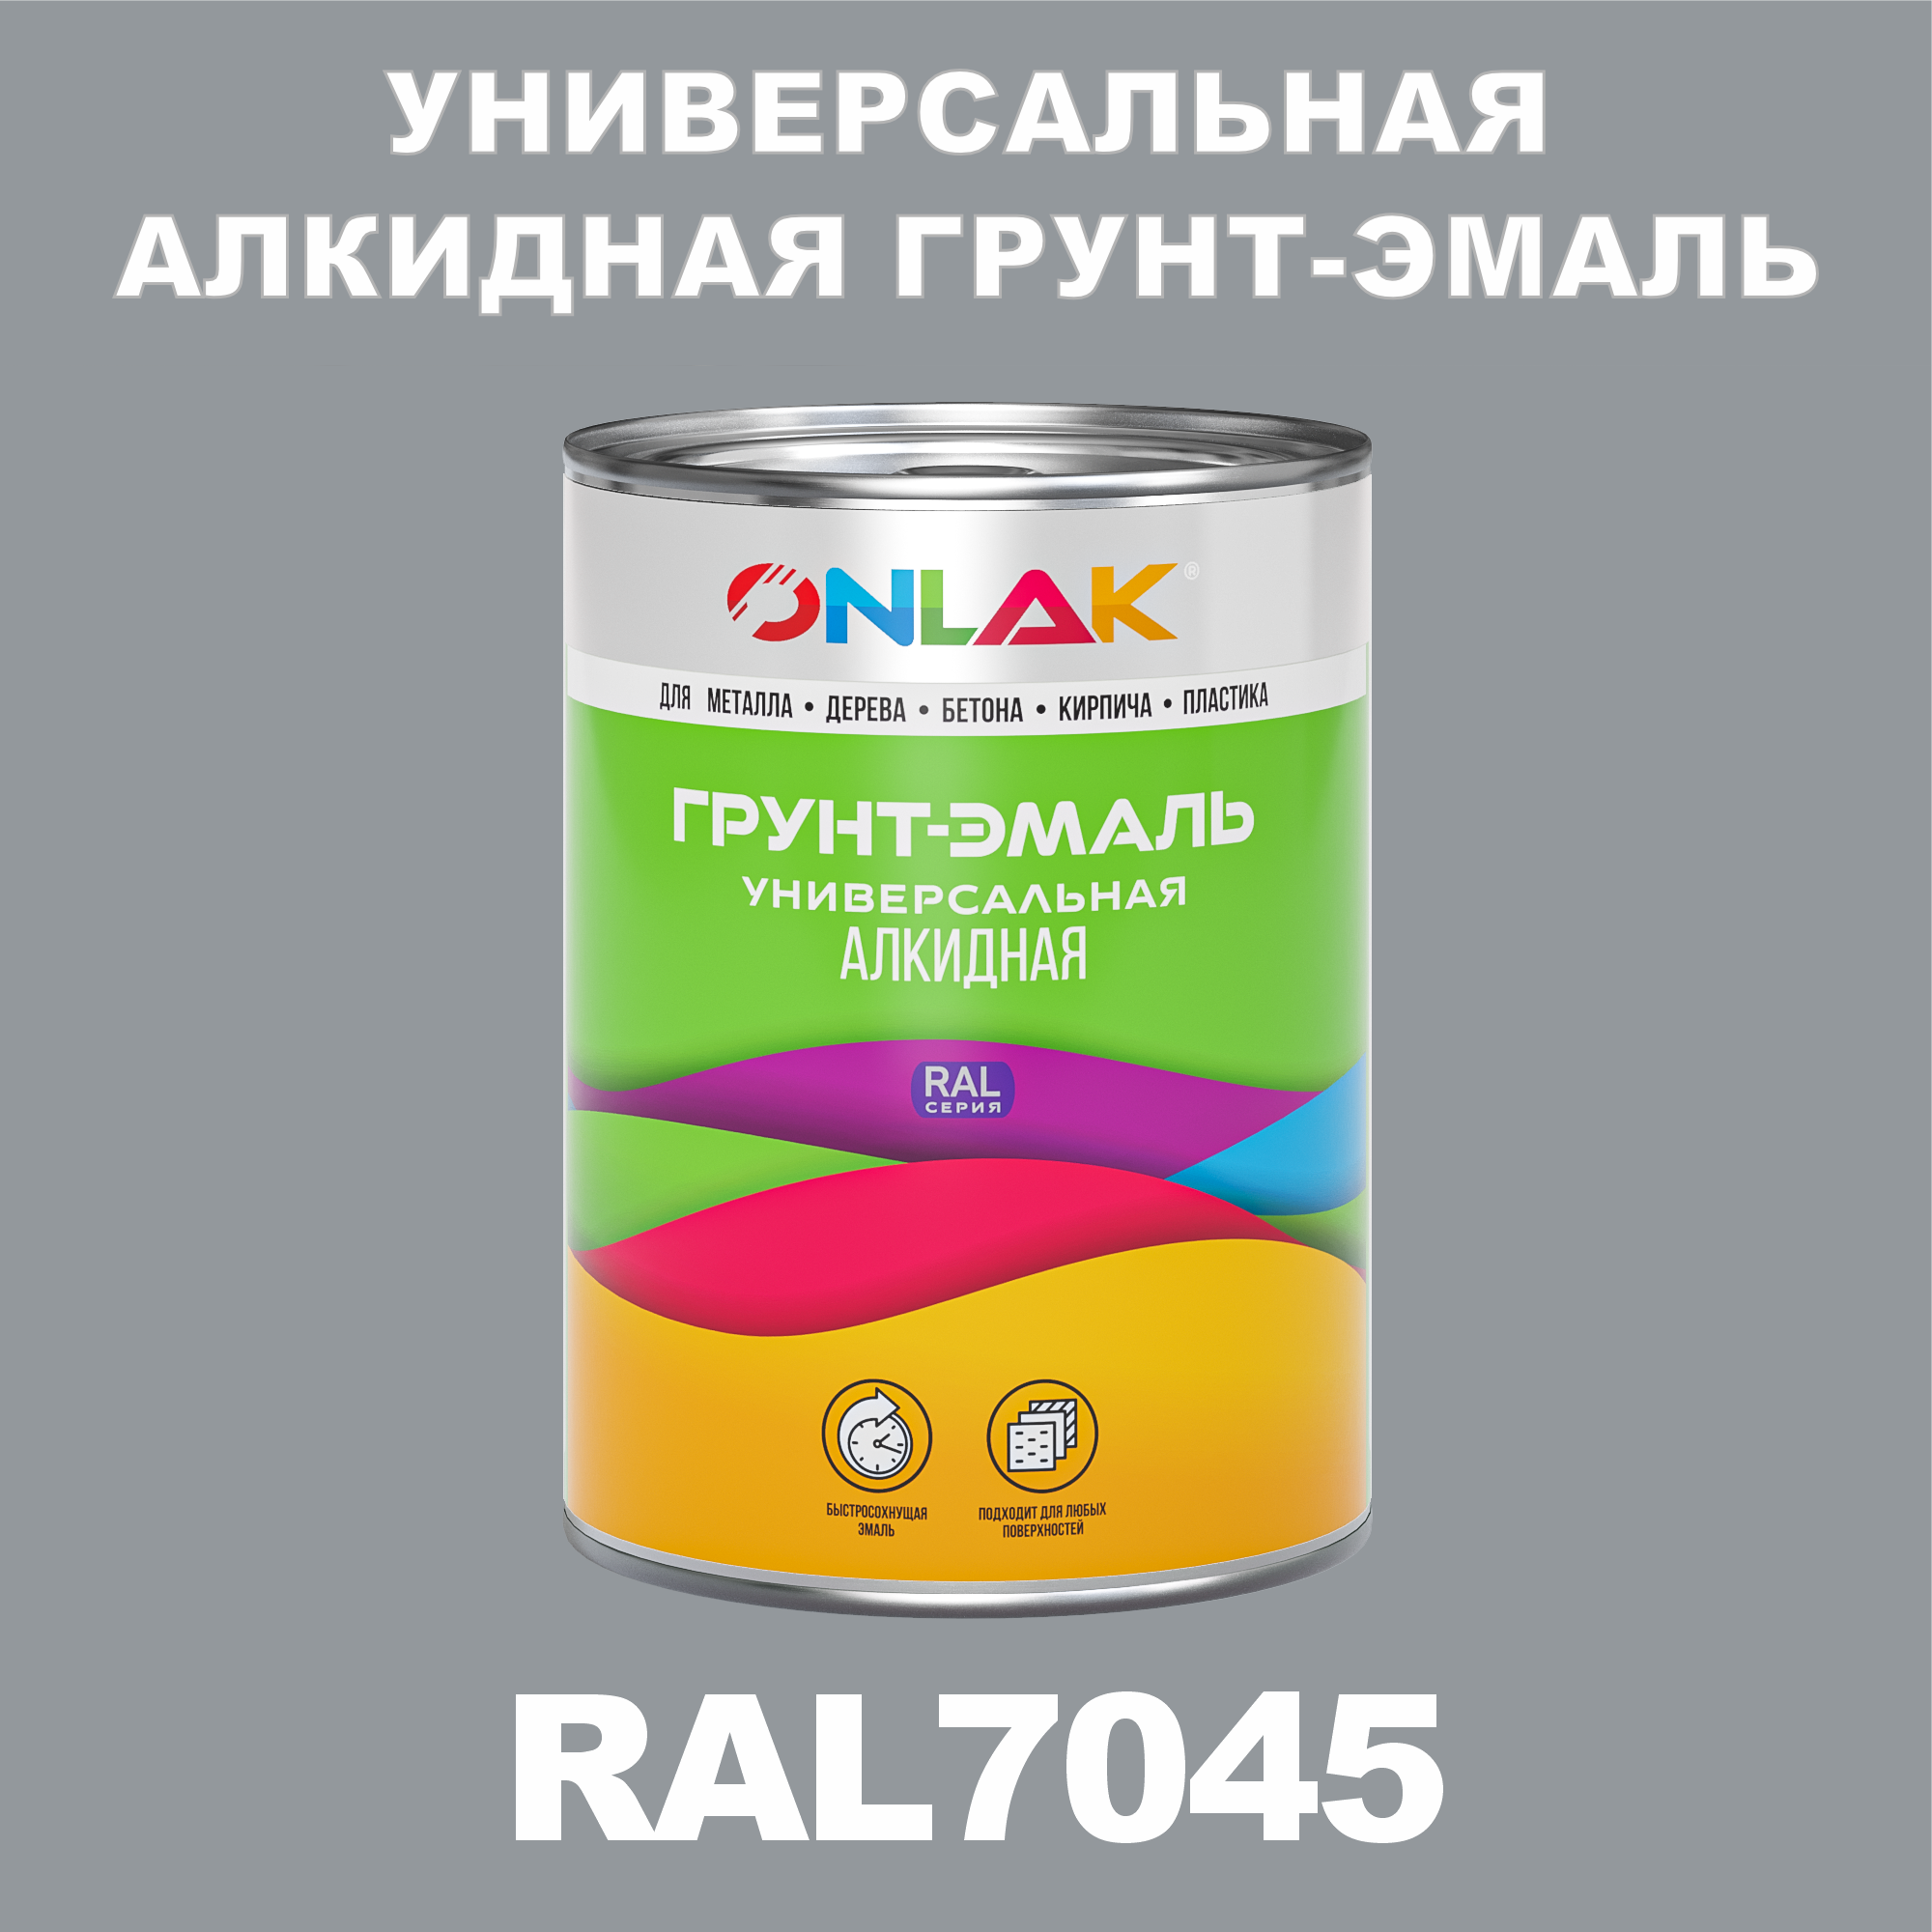 Грунт-эмаль ONLAK 1К RAL7045 антикоррозионная алкидная по металлу по ржавчине 1 кг